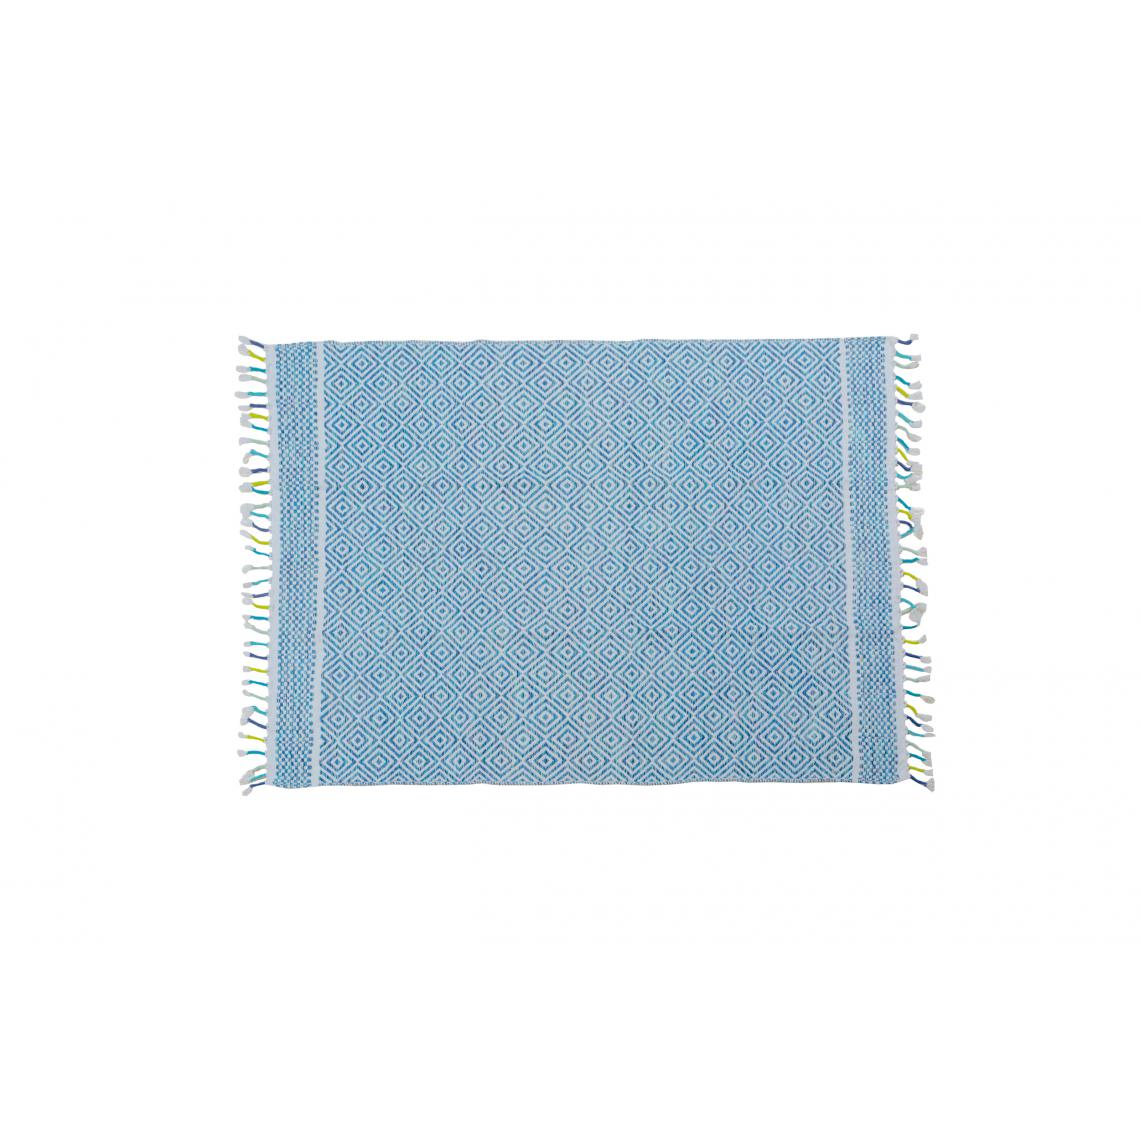 Alter - Tapis moderne Ontario, style kilim, 100% coton, bleu, 200x140cm - Tapis